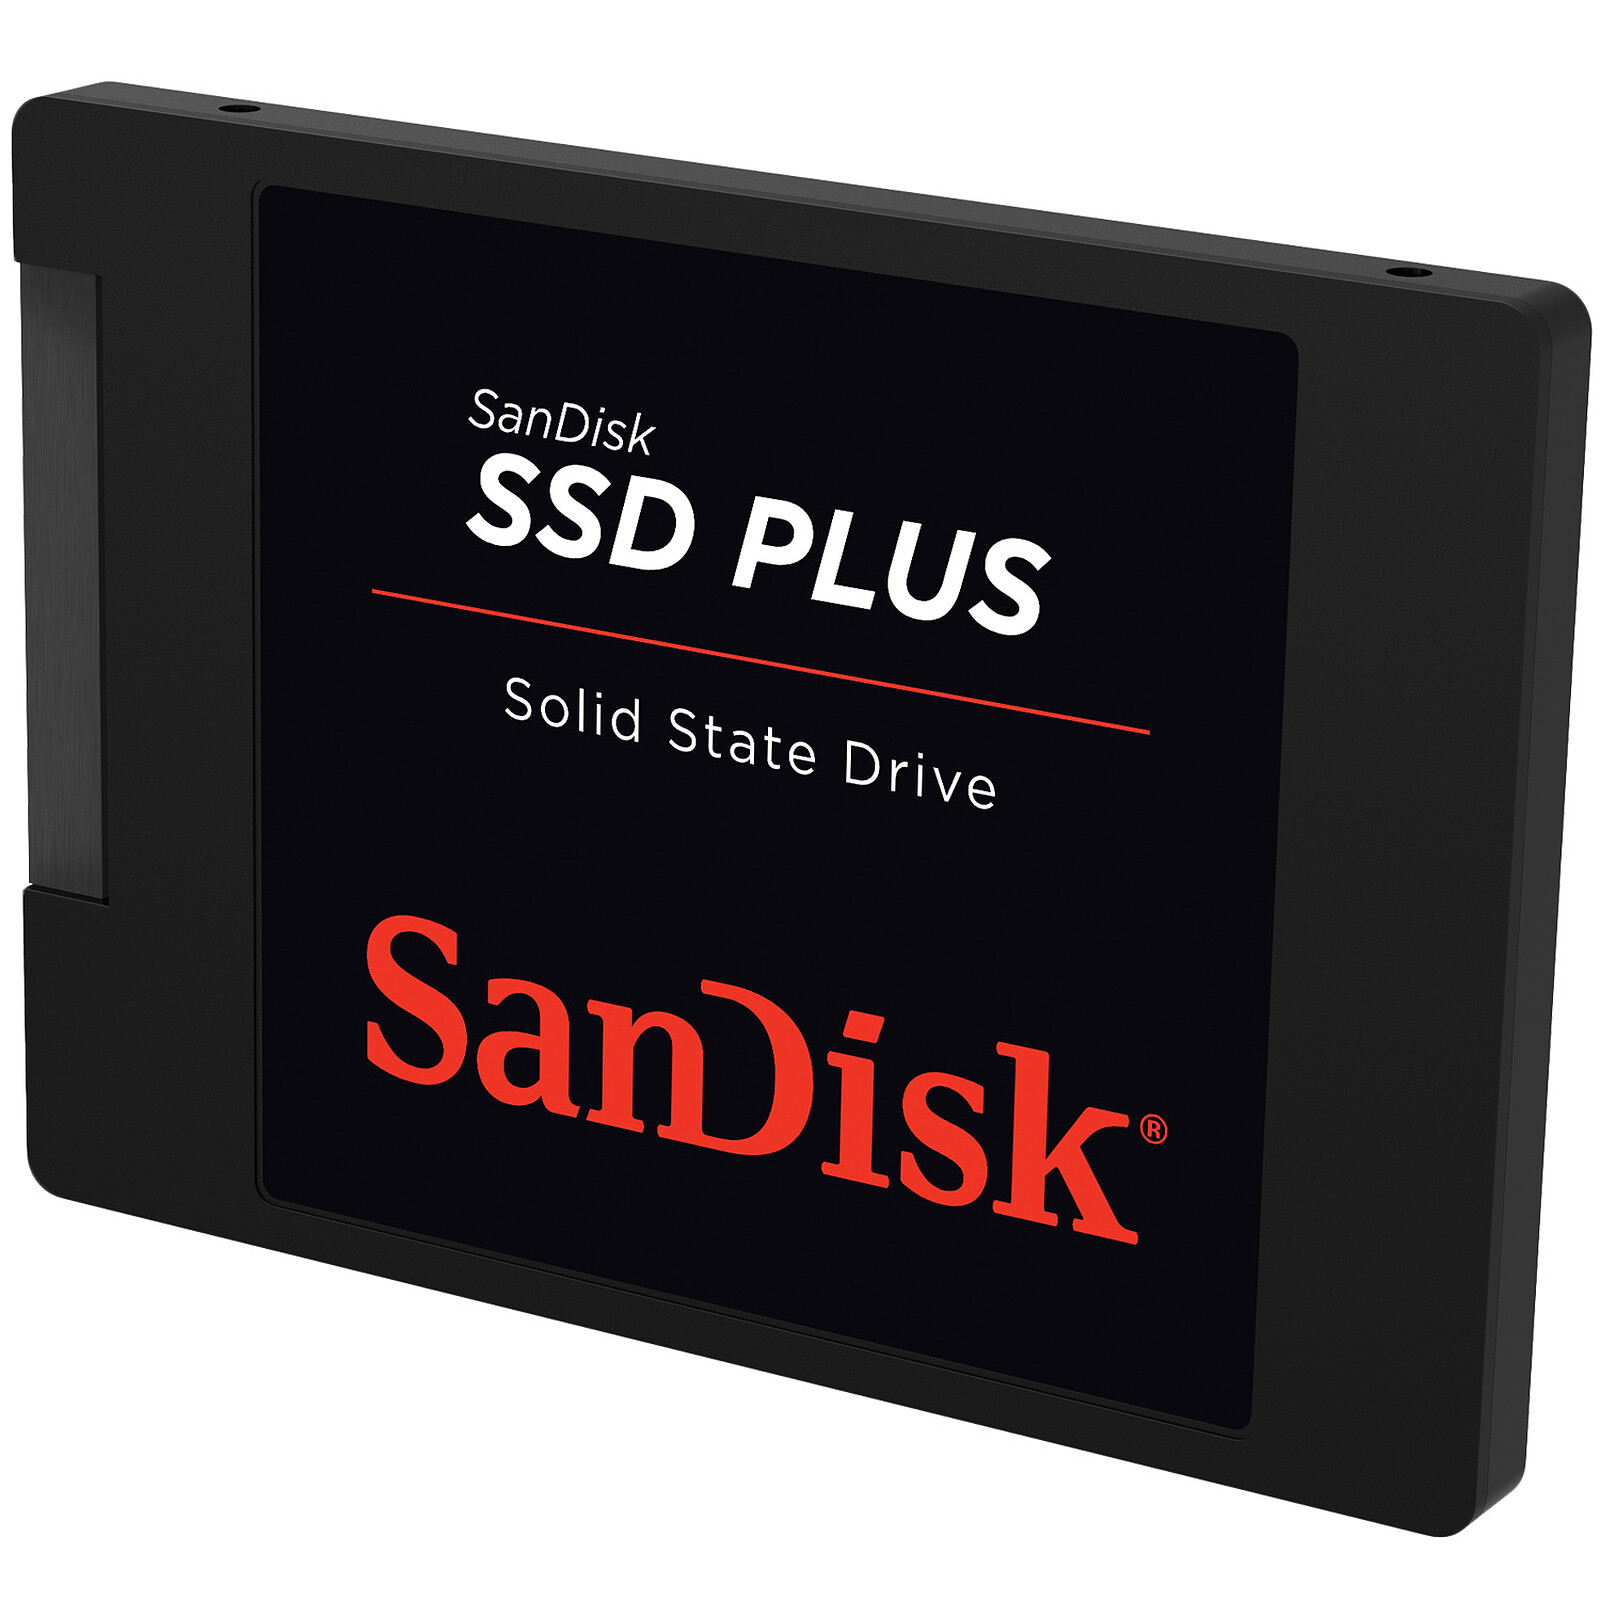 Ce disque dur externe SSD 1 TO de Sandisk profite d'une chute de prix